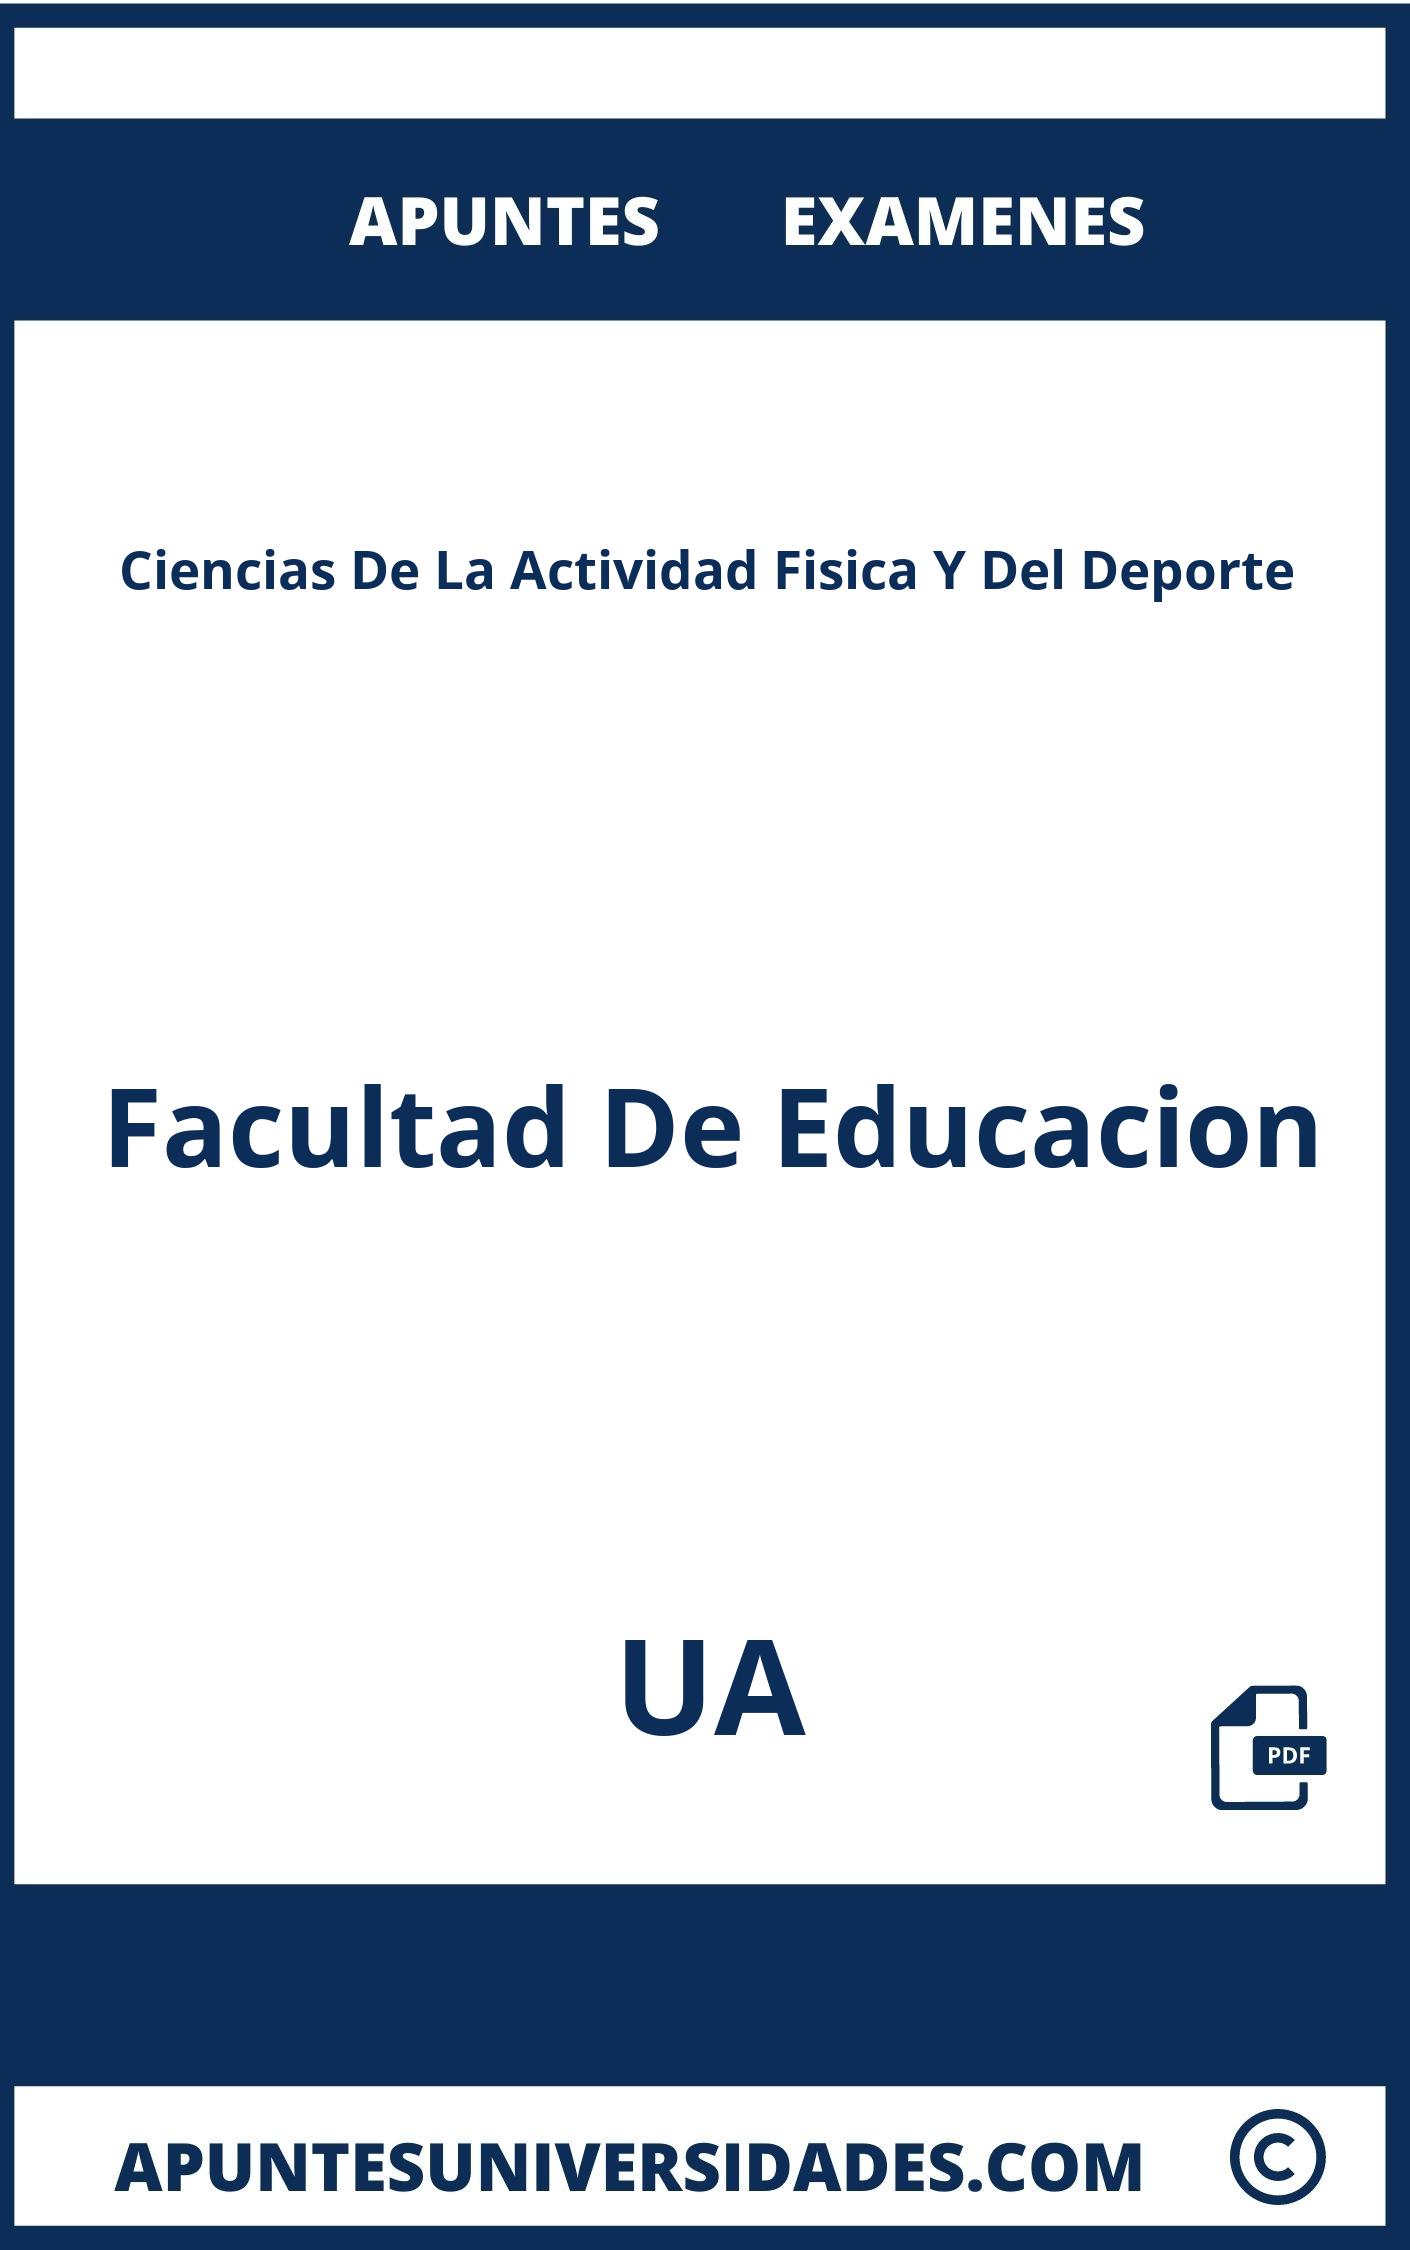 Examenes y Apuntes Ciencias De La Actividad Fisica Y Del Deporte UA